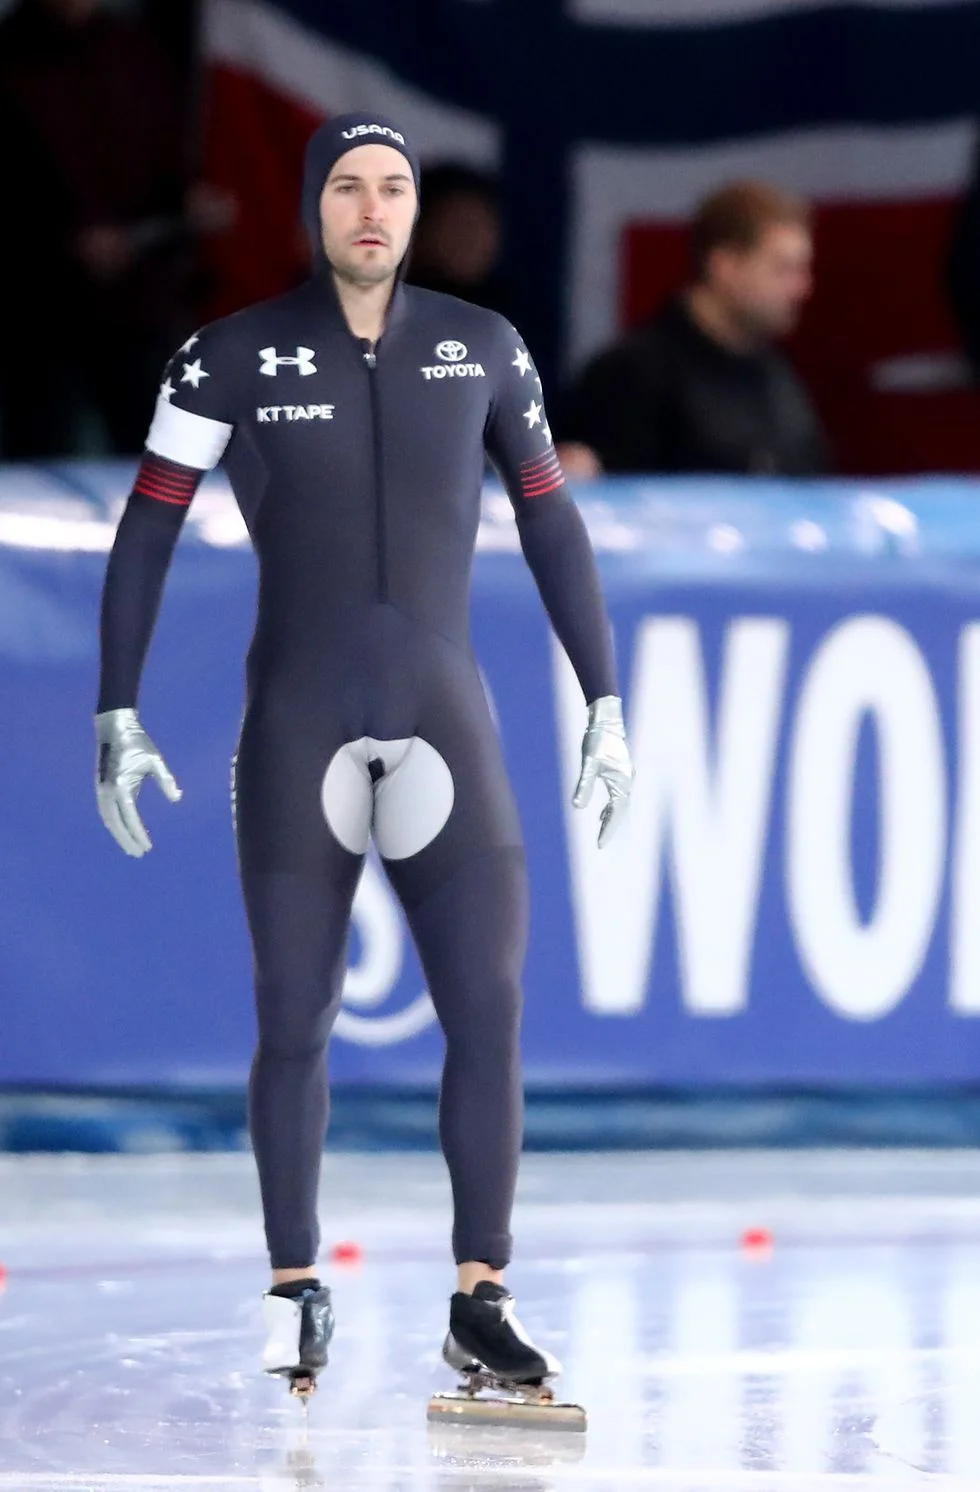 Олимпиада - это не только спорт, но и пенисы, которые видны через очень плотные костюмы - фото 366200